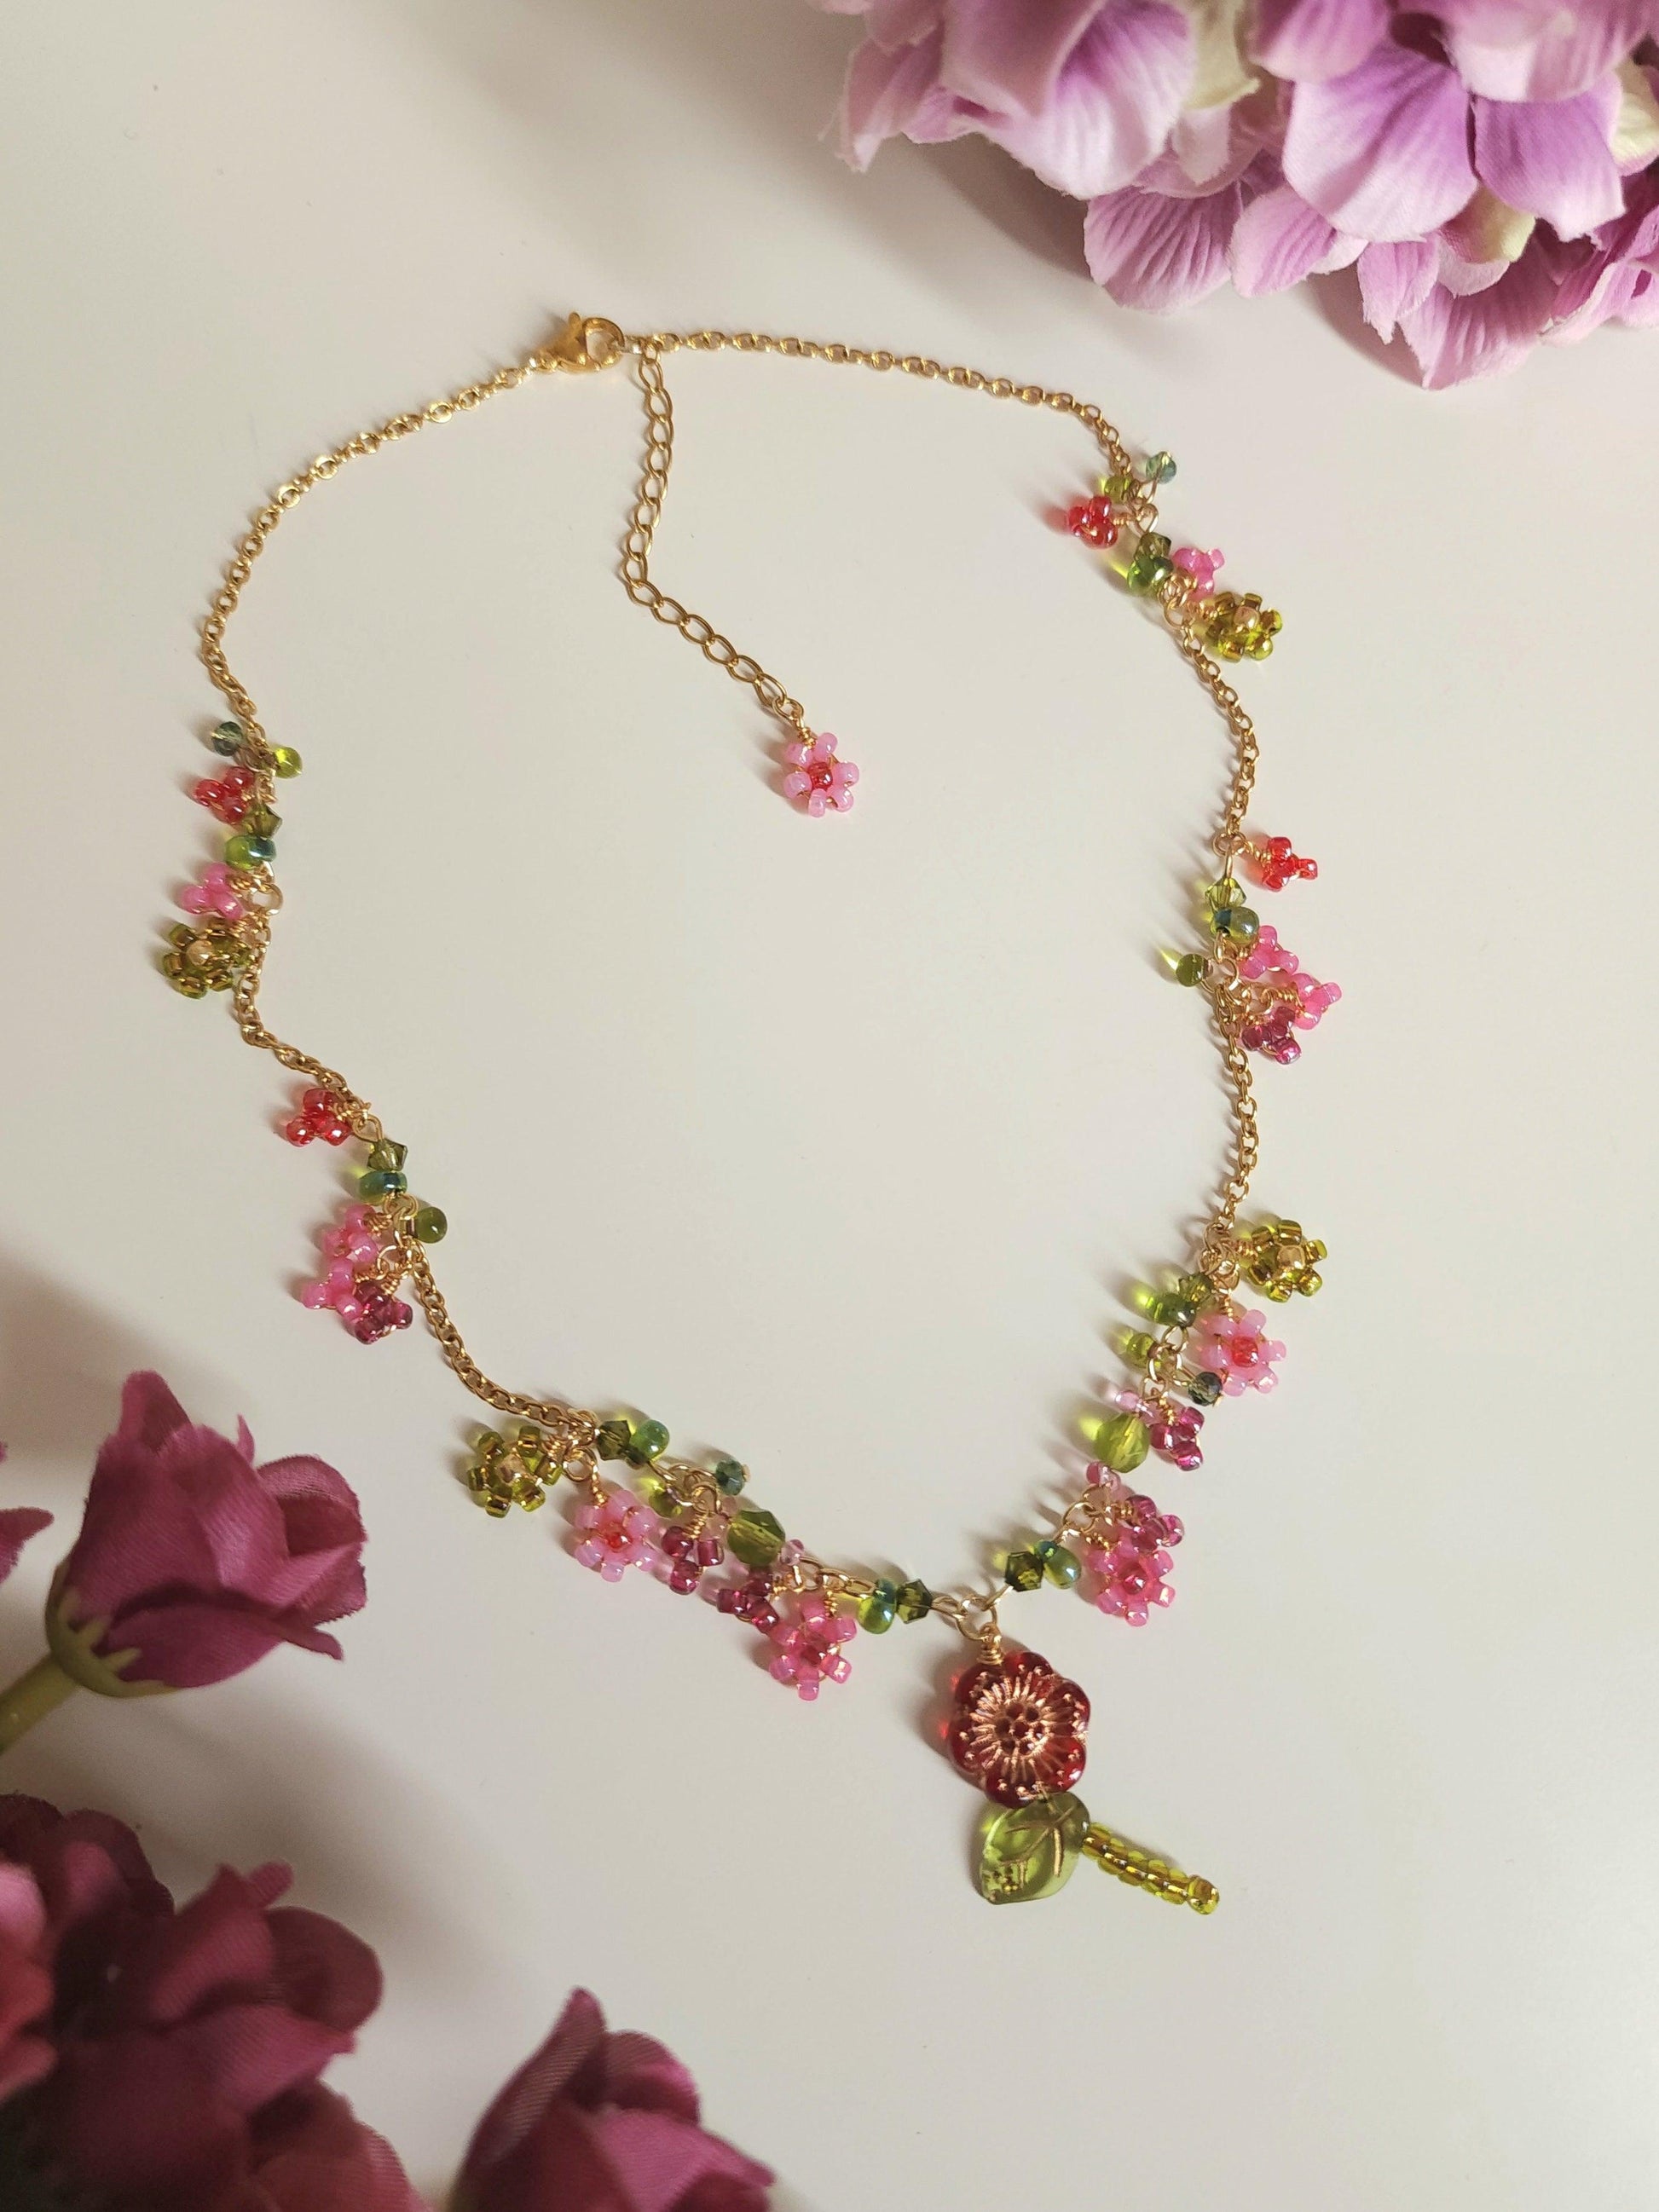 Crimson Dahlia Necklace - By Cocoyu